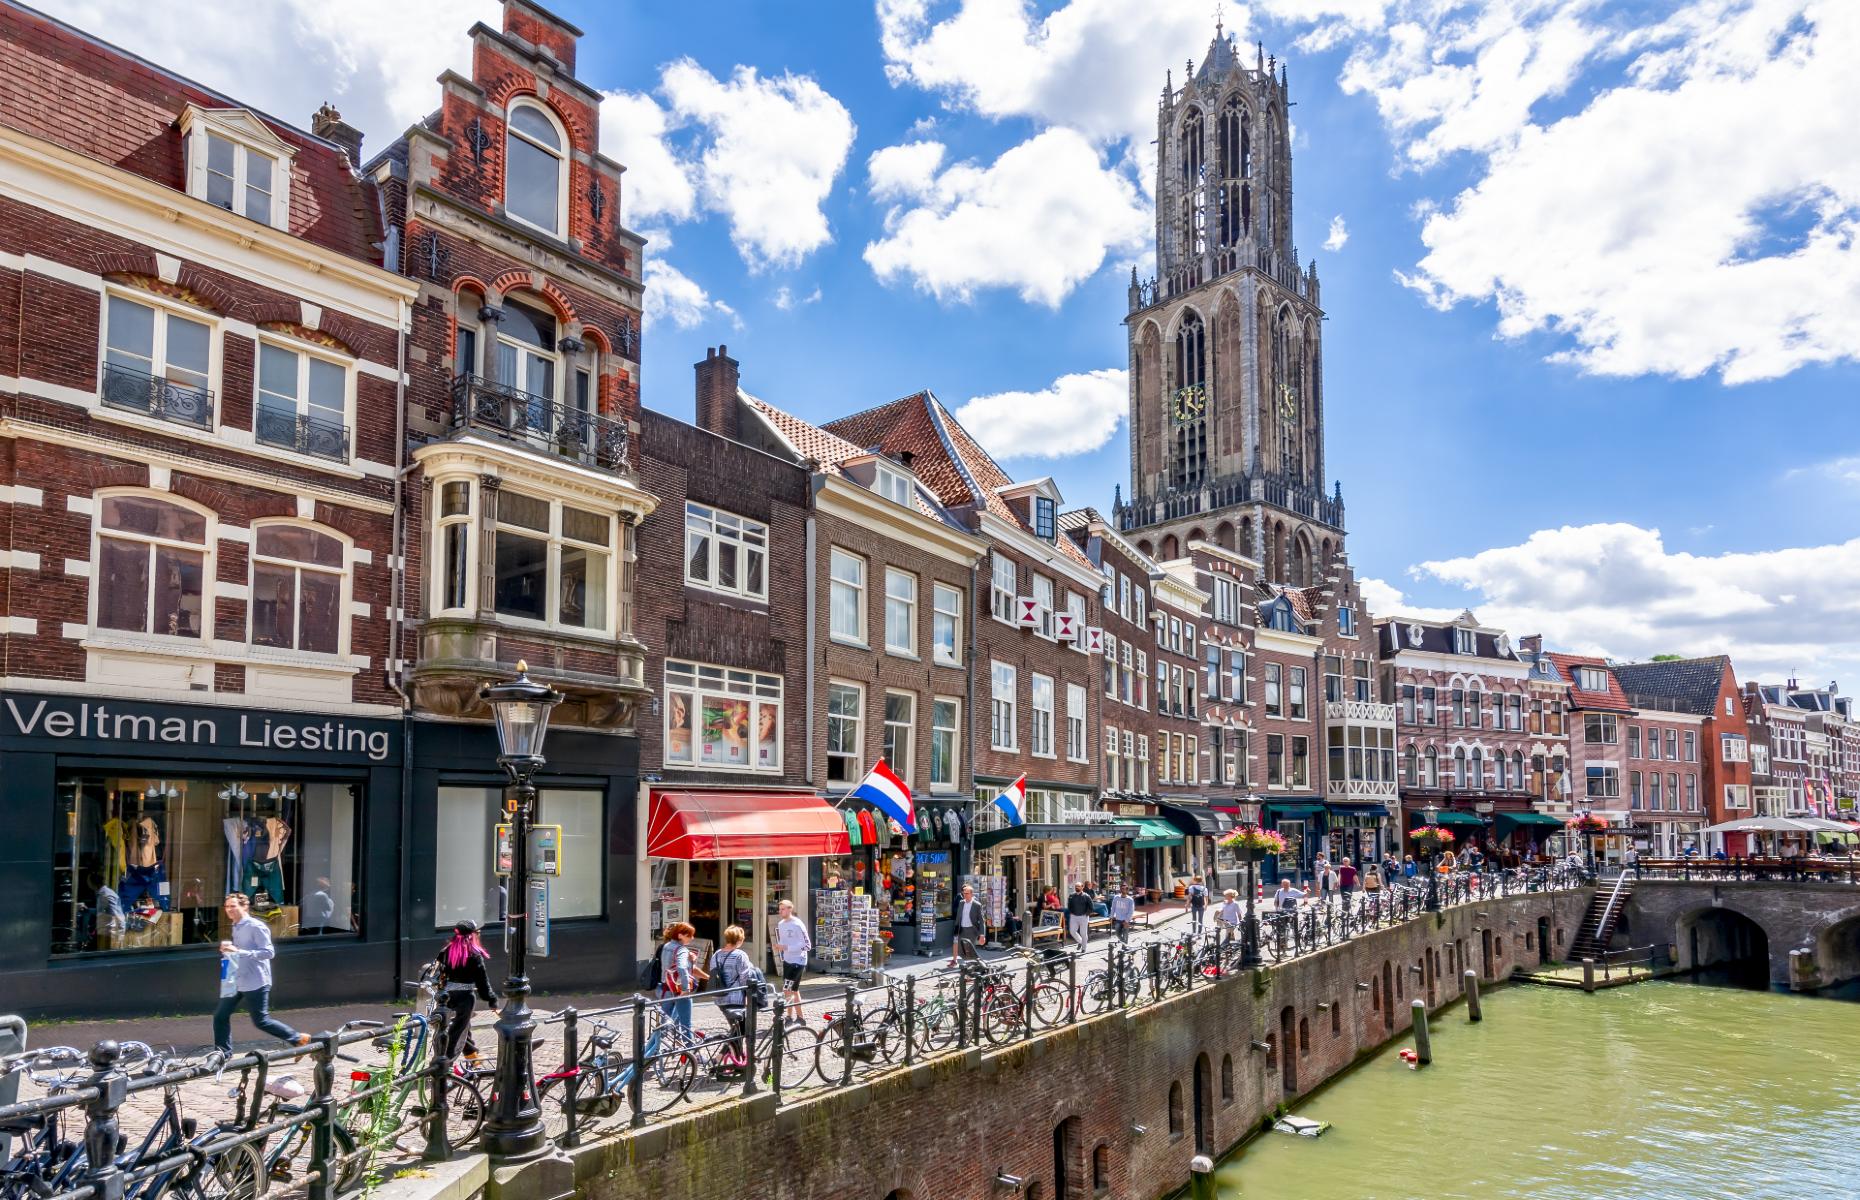 Utrecht centre (Image: Mistervlad/Shutterstock)